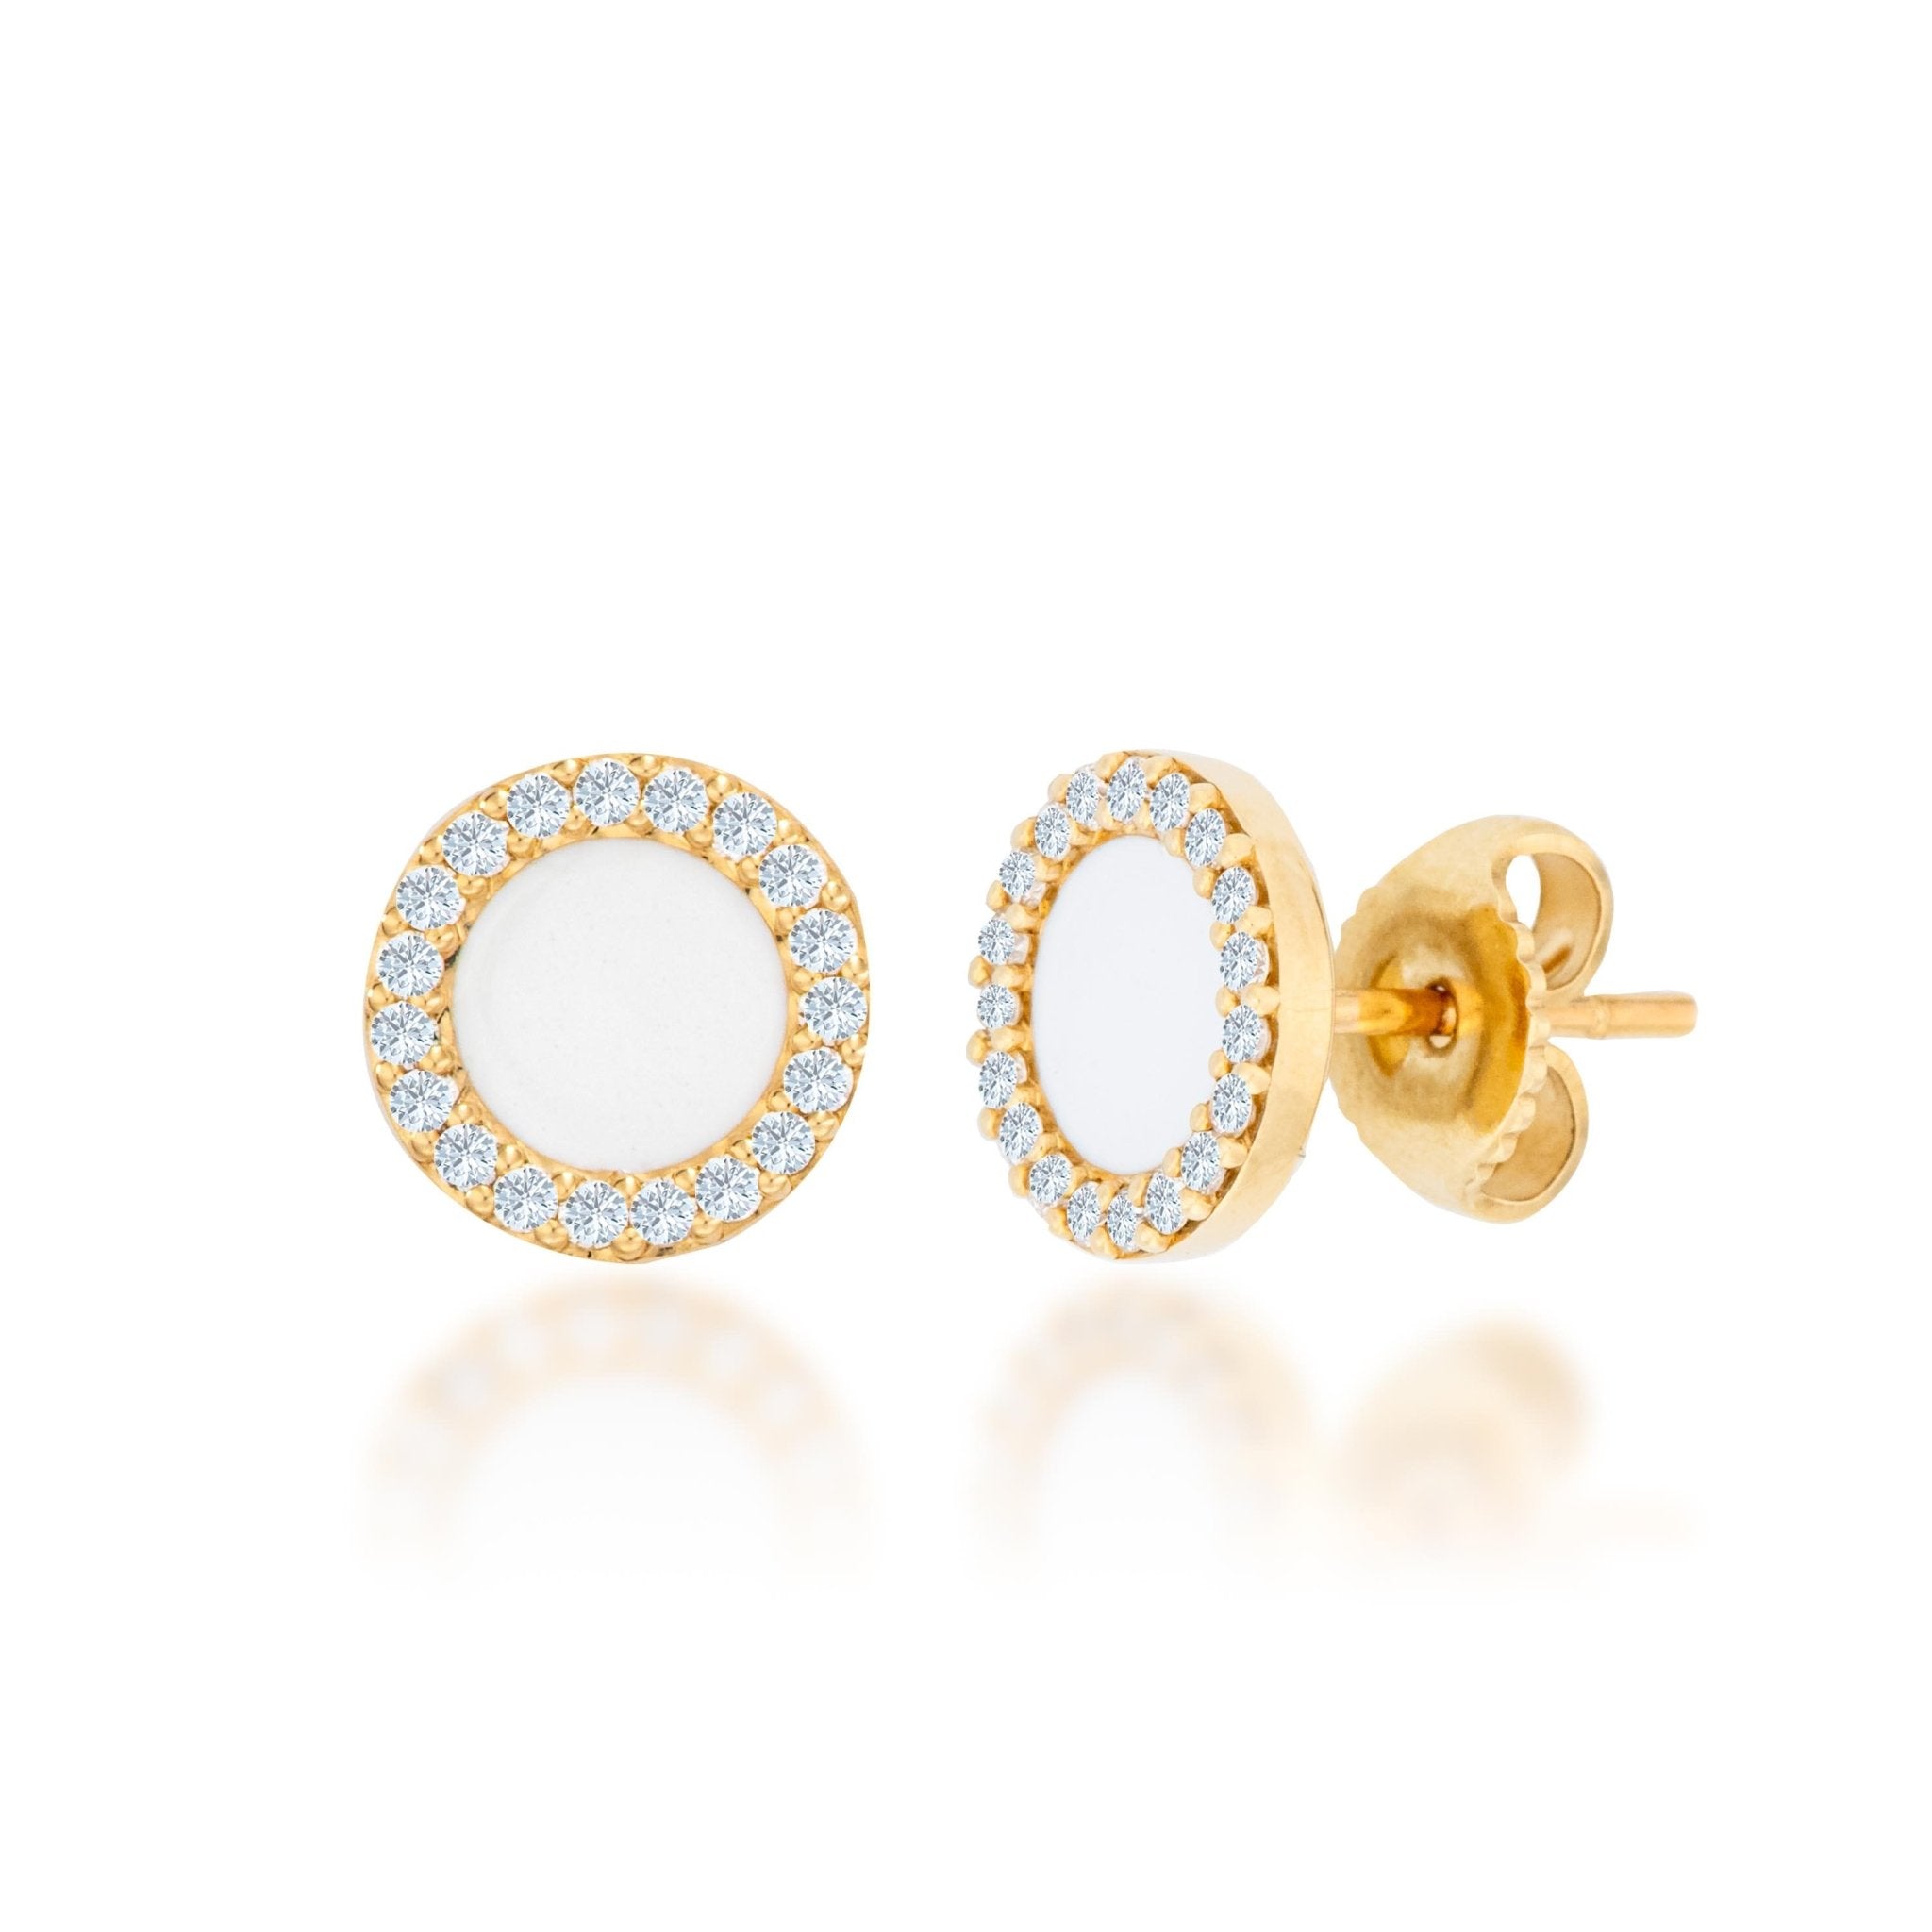 White Enamel Earrings - Alexis Jae Jewelry